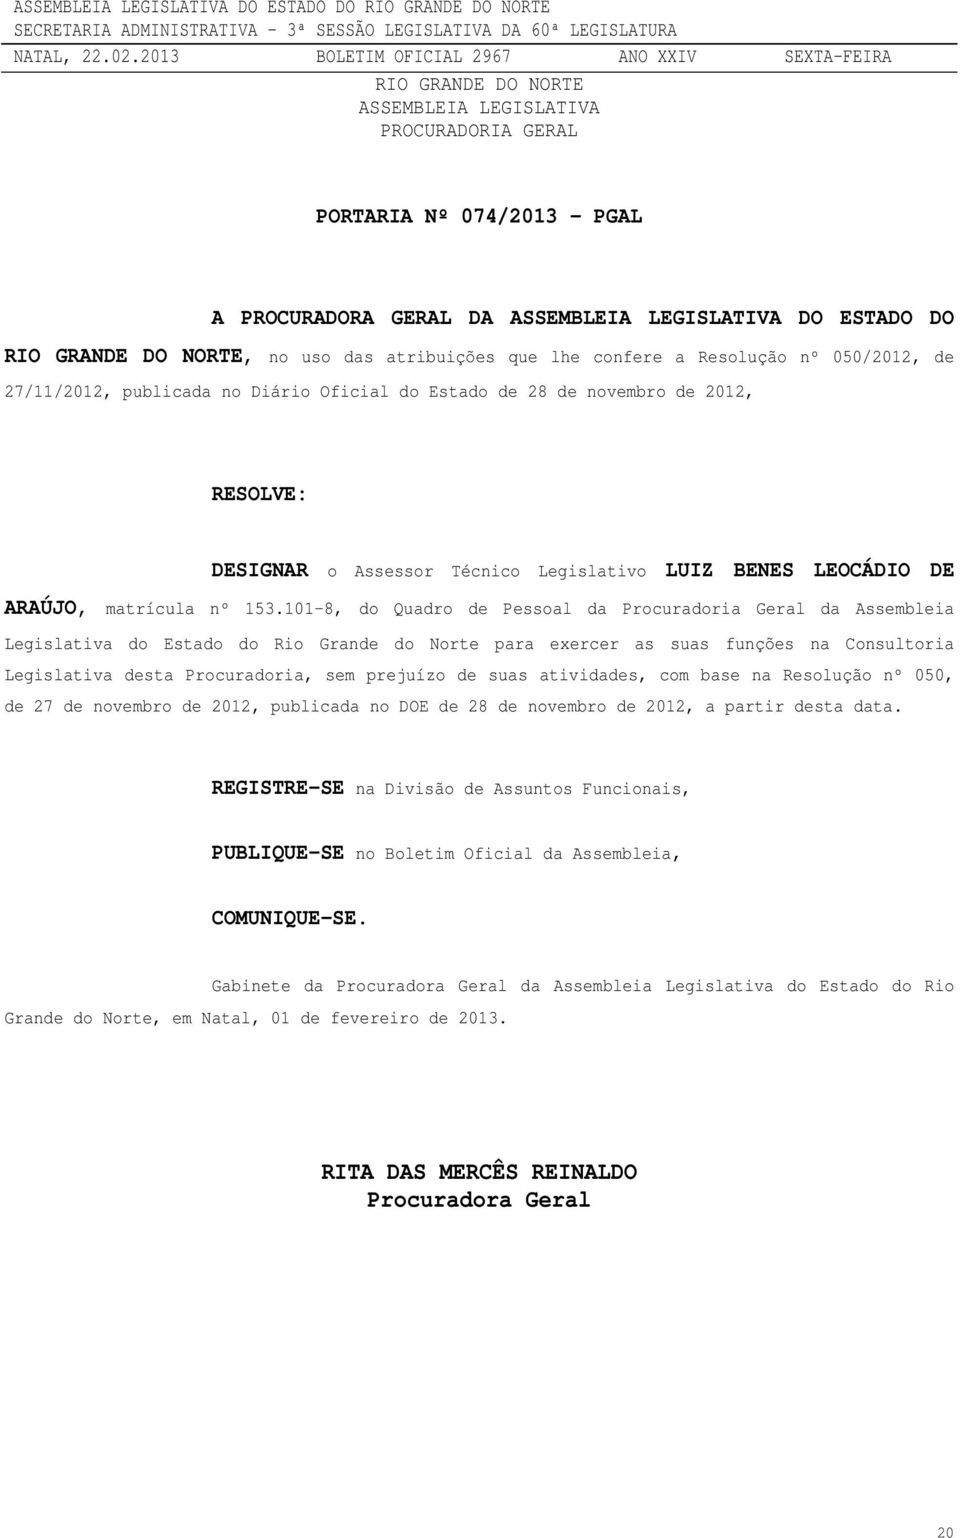 101-8, do Quadro de Pessoal da Procuradoria Geral da Assembleia Legislativa do Estado do Rio Grande do Norte para exercer as suas funções